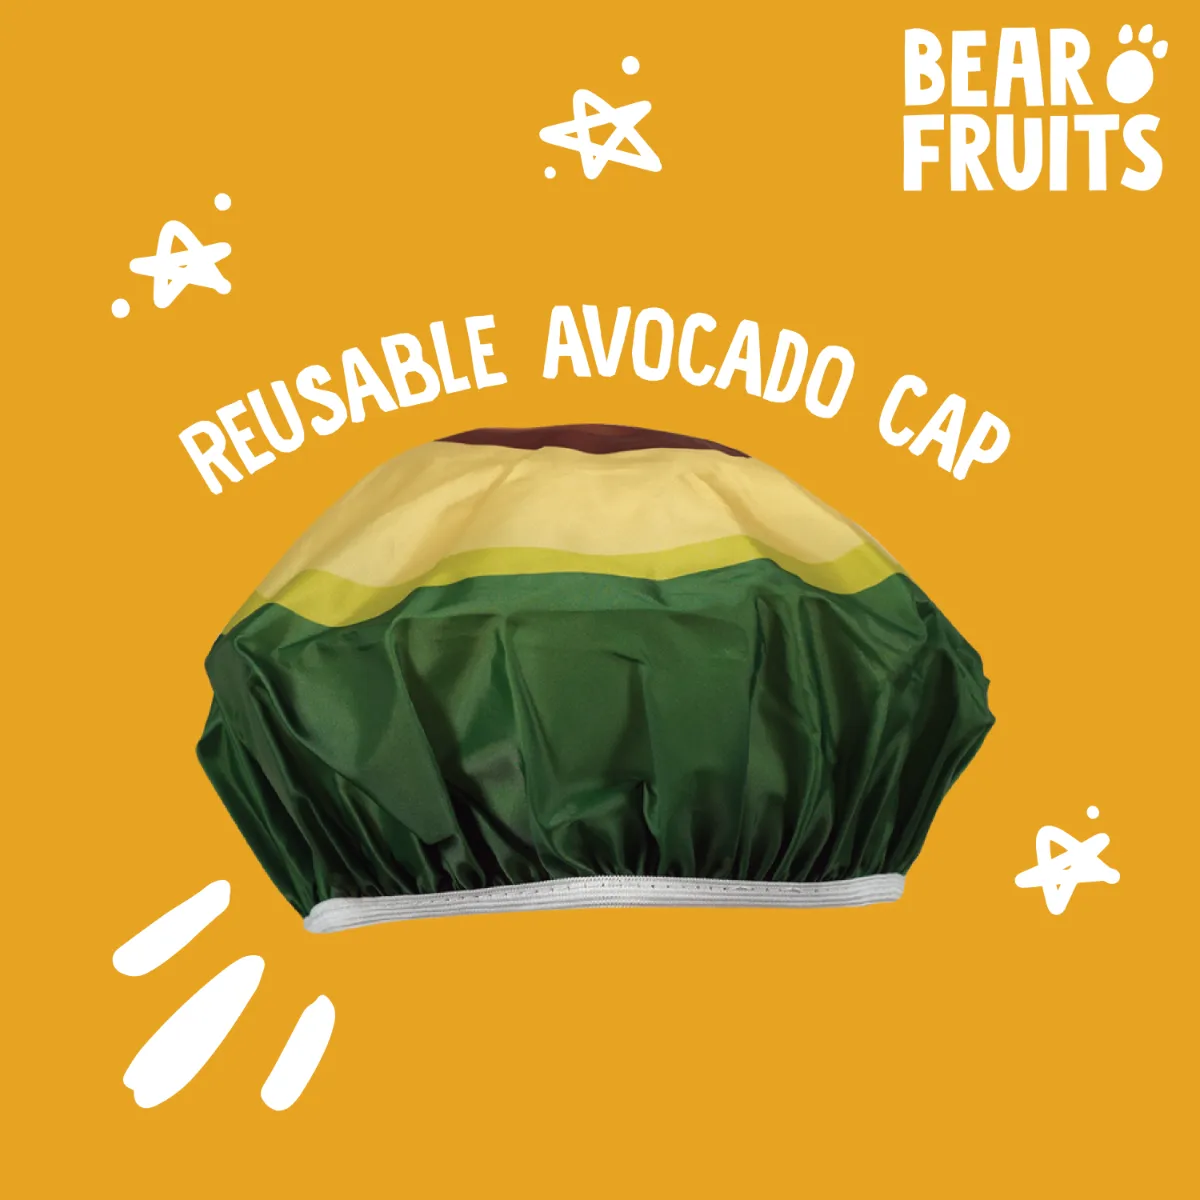 Bear Fruits Avocado vyživující a regenerační maska na vlasy 20 ml